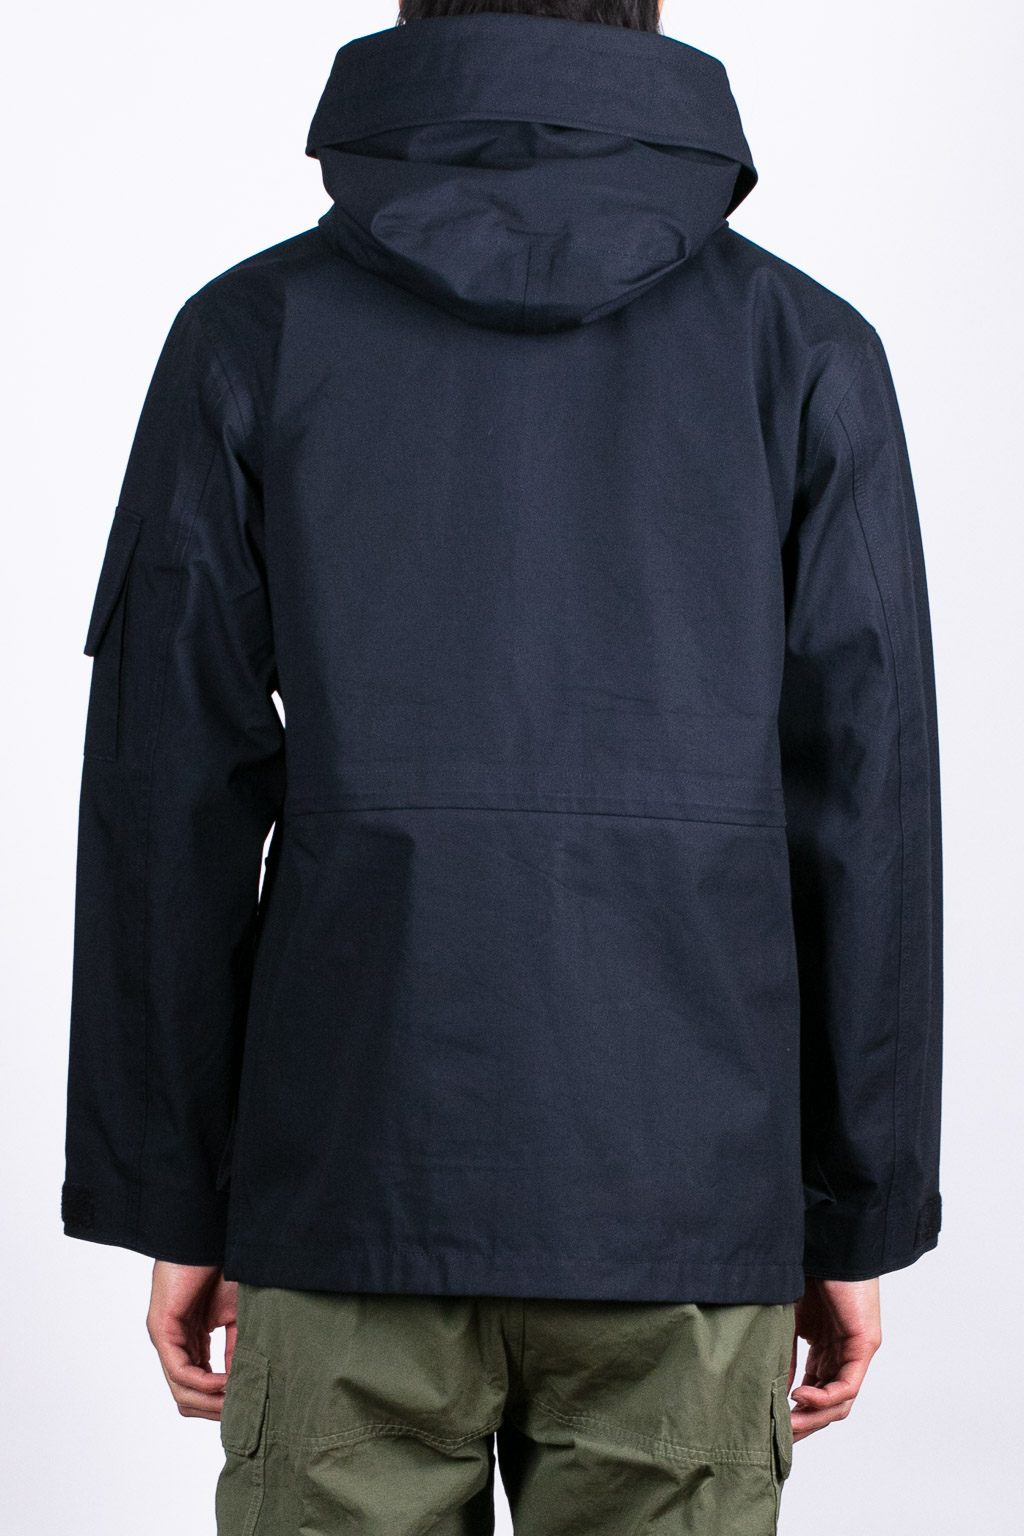 100%新品得価GORE-TEX cruiser jacket シェルジャケット　ドローコード ジャケット・アウター